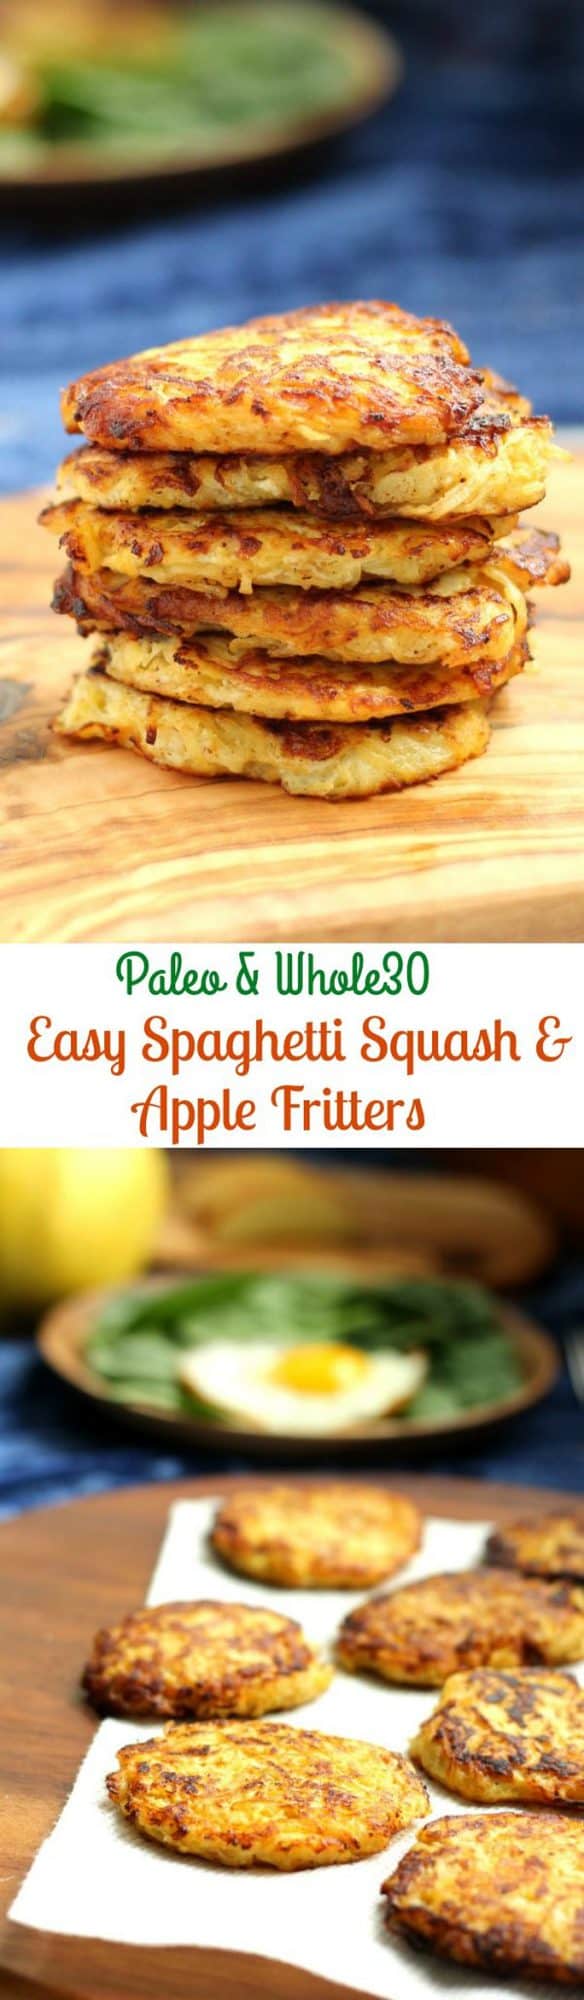 Spaghetti Squash Apple Fritters {Paleo & Whole30}